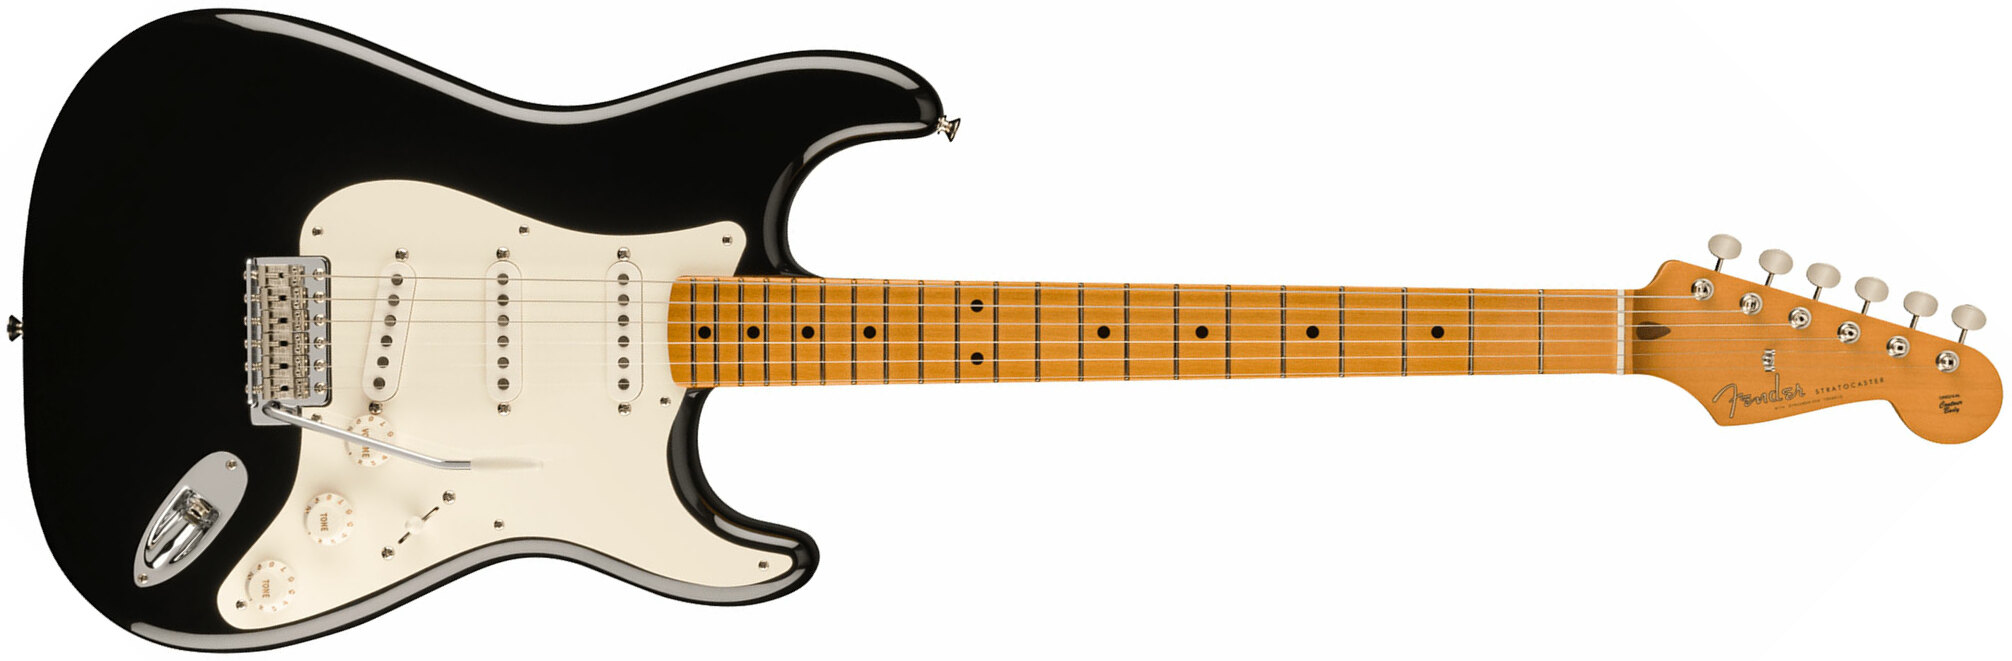 Fender Strat 50s Vintera 2 Mex 3s Trem Mn - Black - Elektrische gitaar in Str-vorm - Main picture